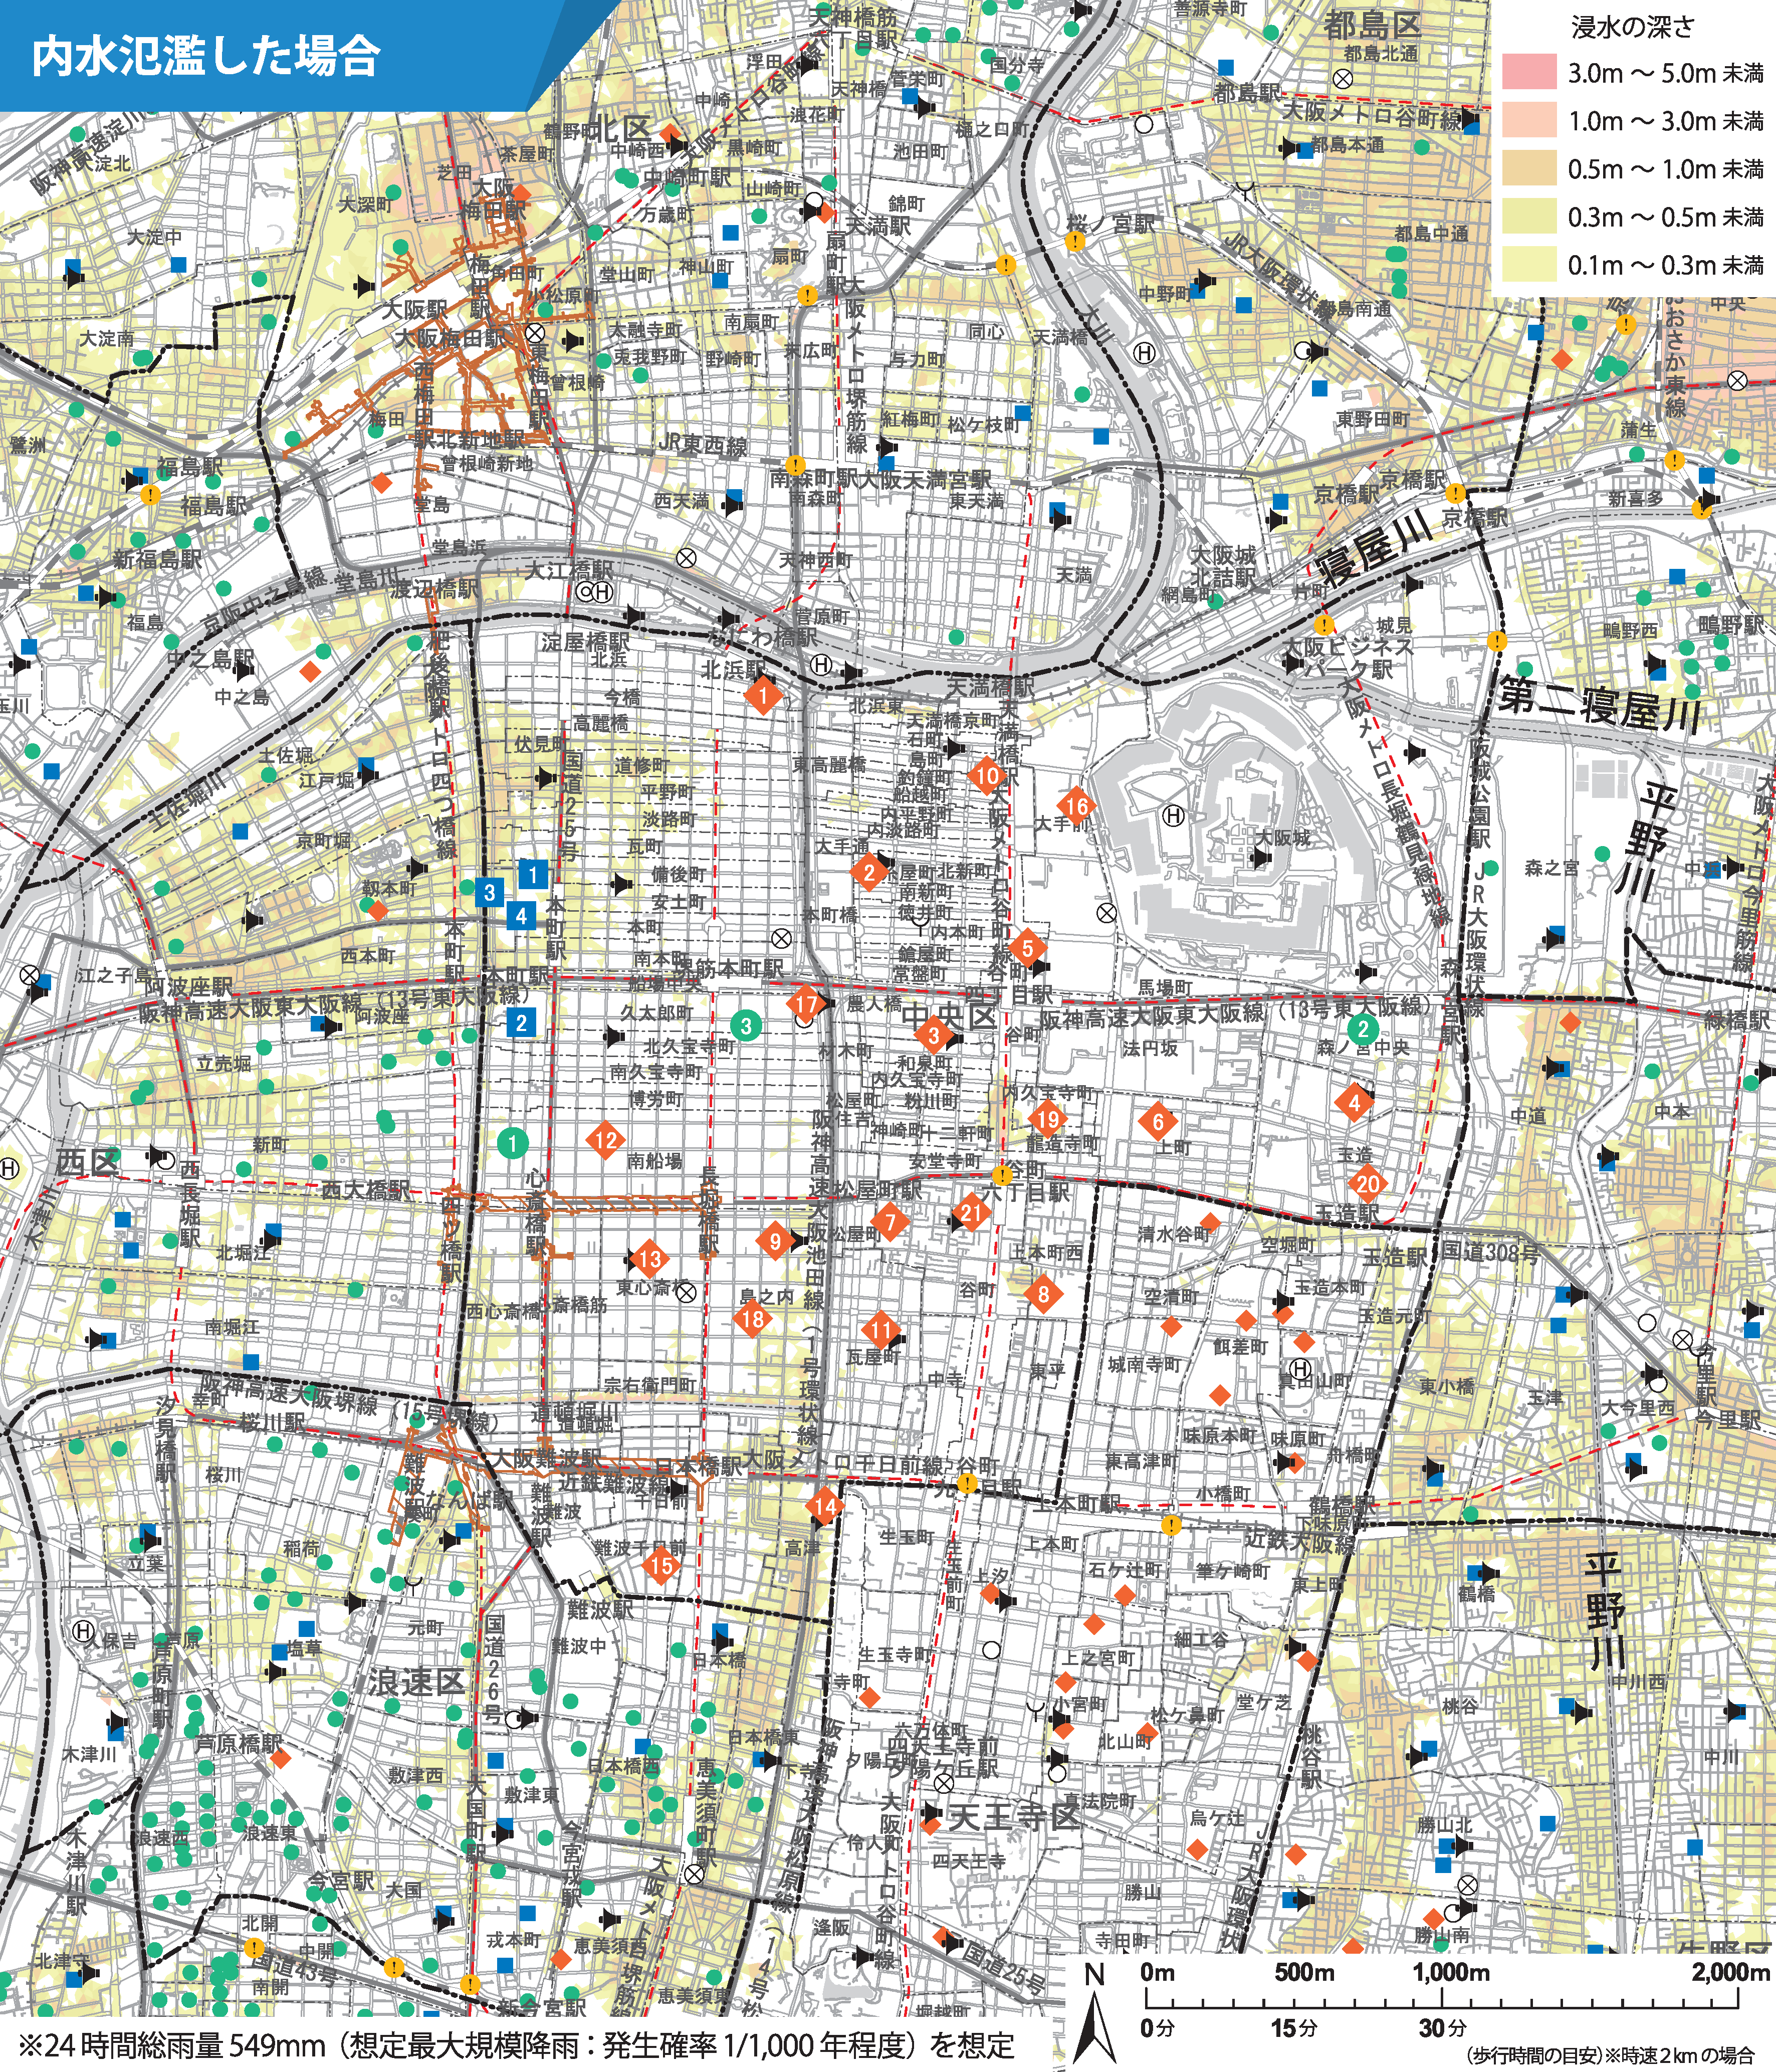 大阪市中央区のハザードマップ見たんですが...